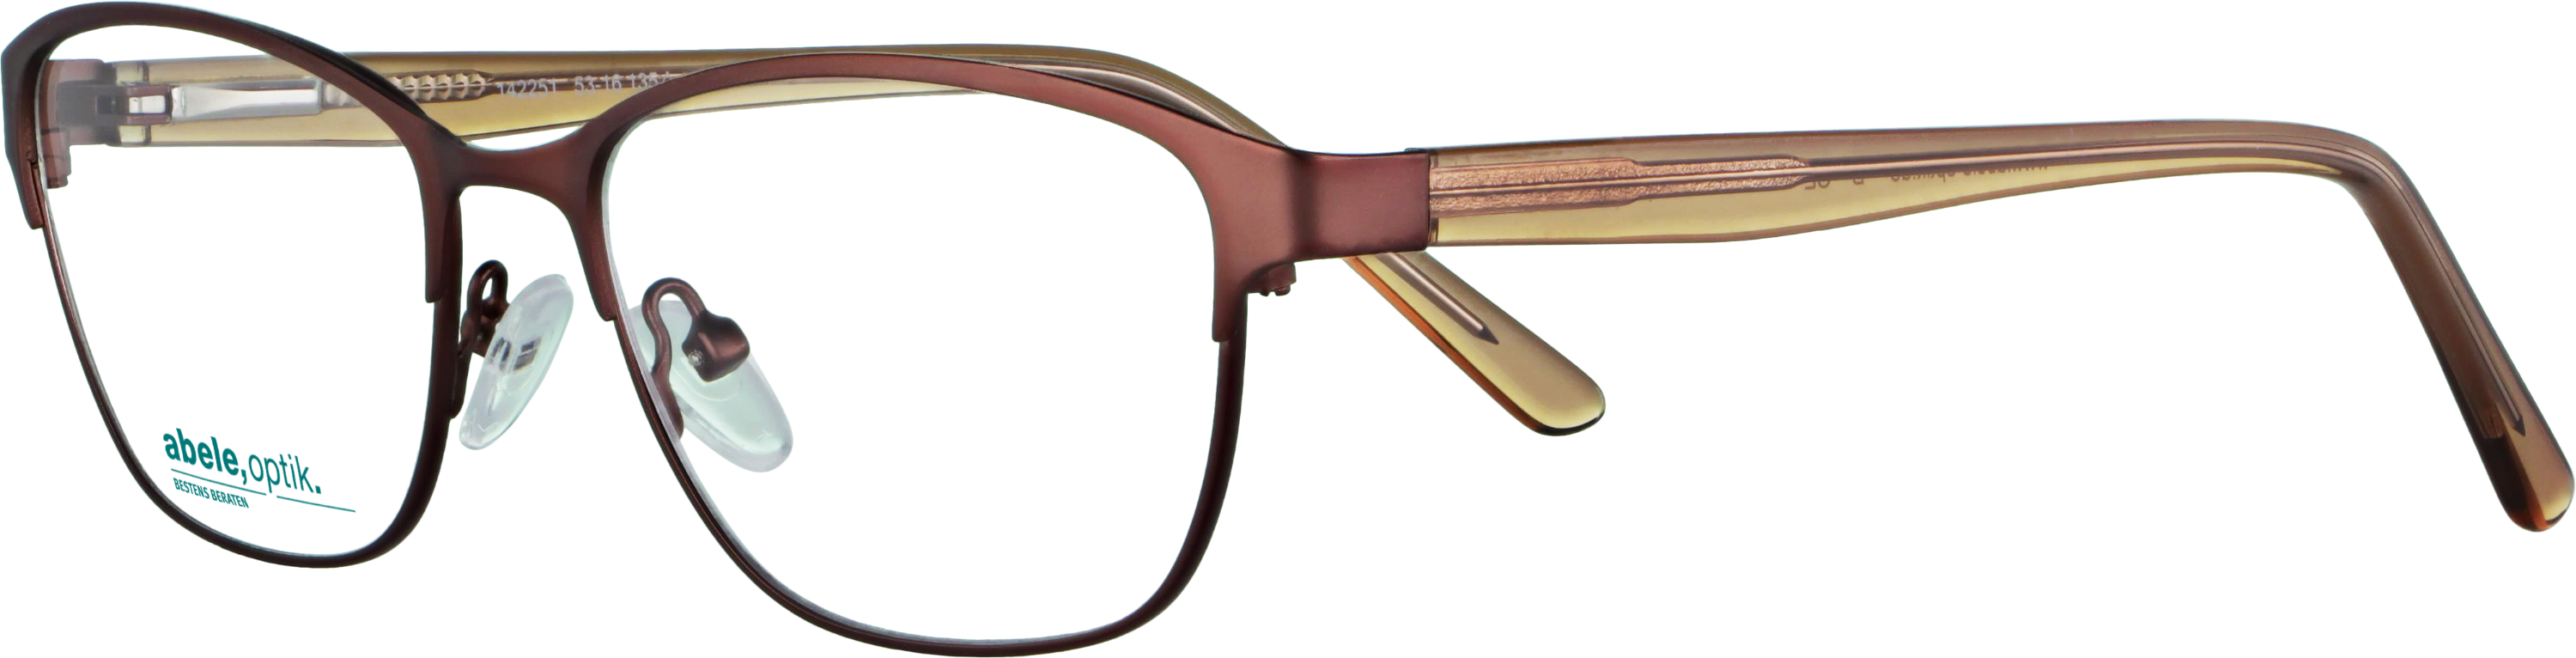 Das Bild zeigt die Korrektionsbrille 142251 von der Marke Abele Optik in braun matt.